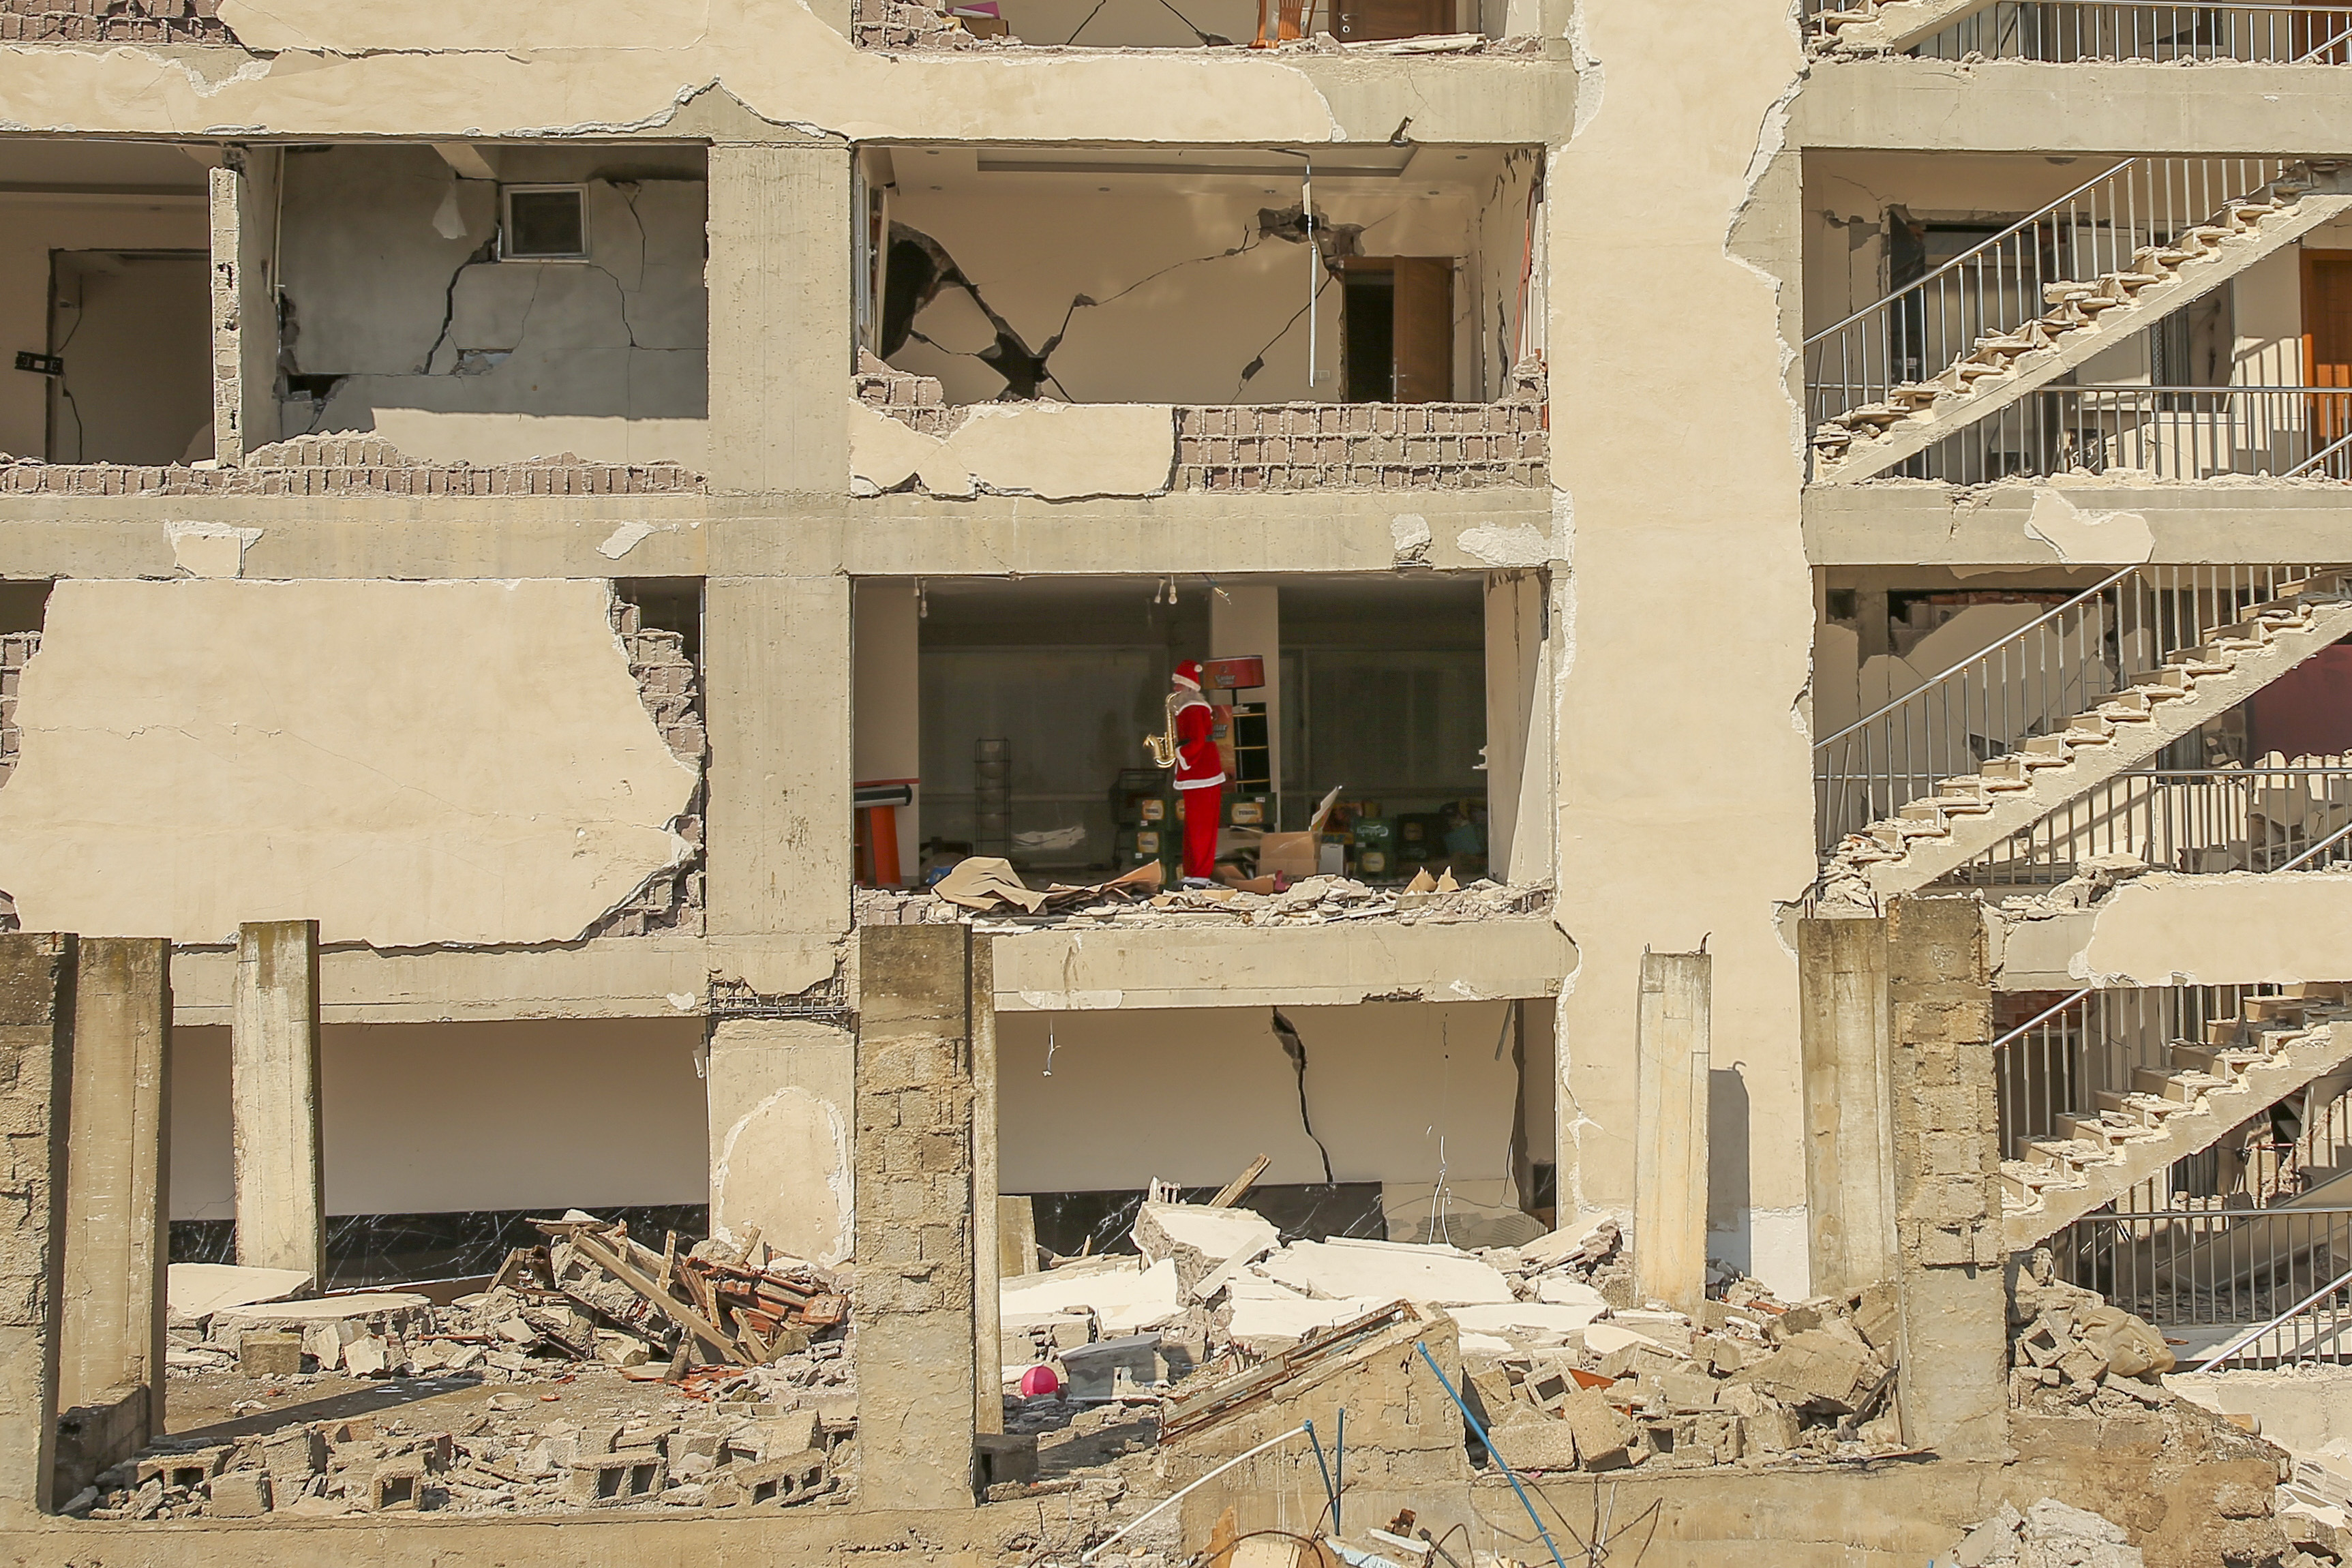 Santa mannequin stands inside destroyed building.